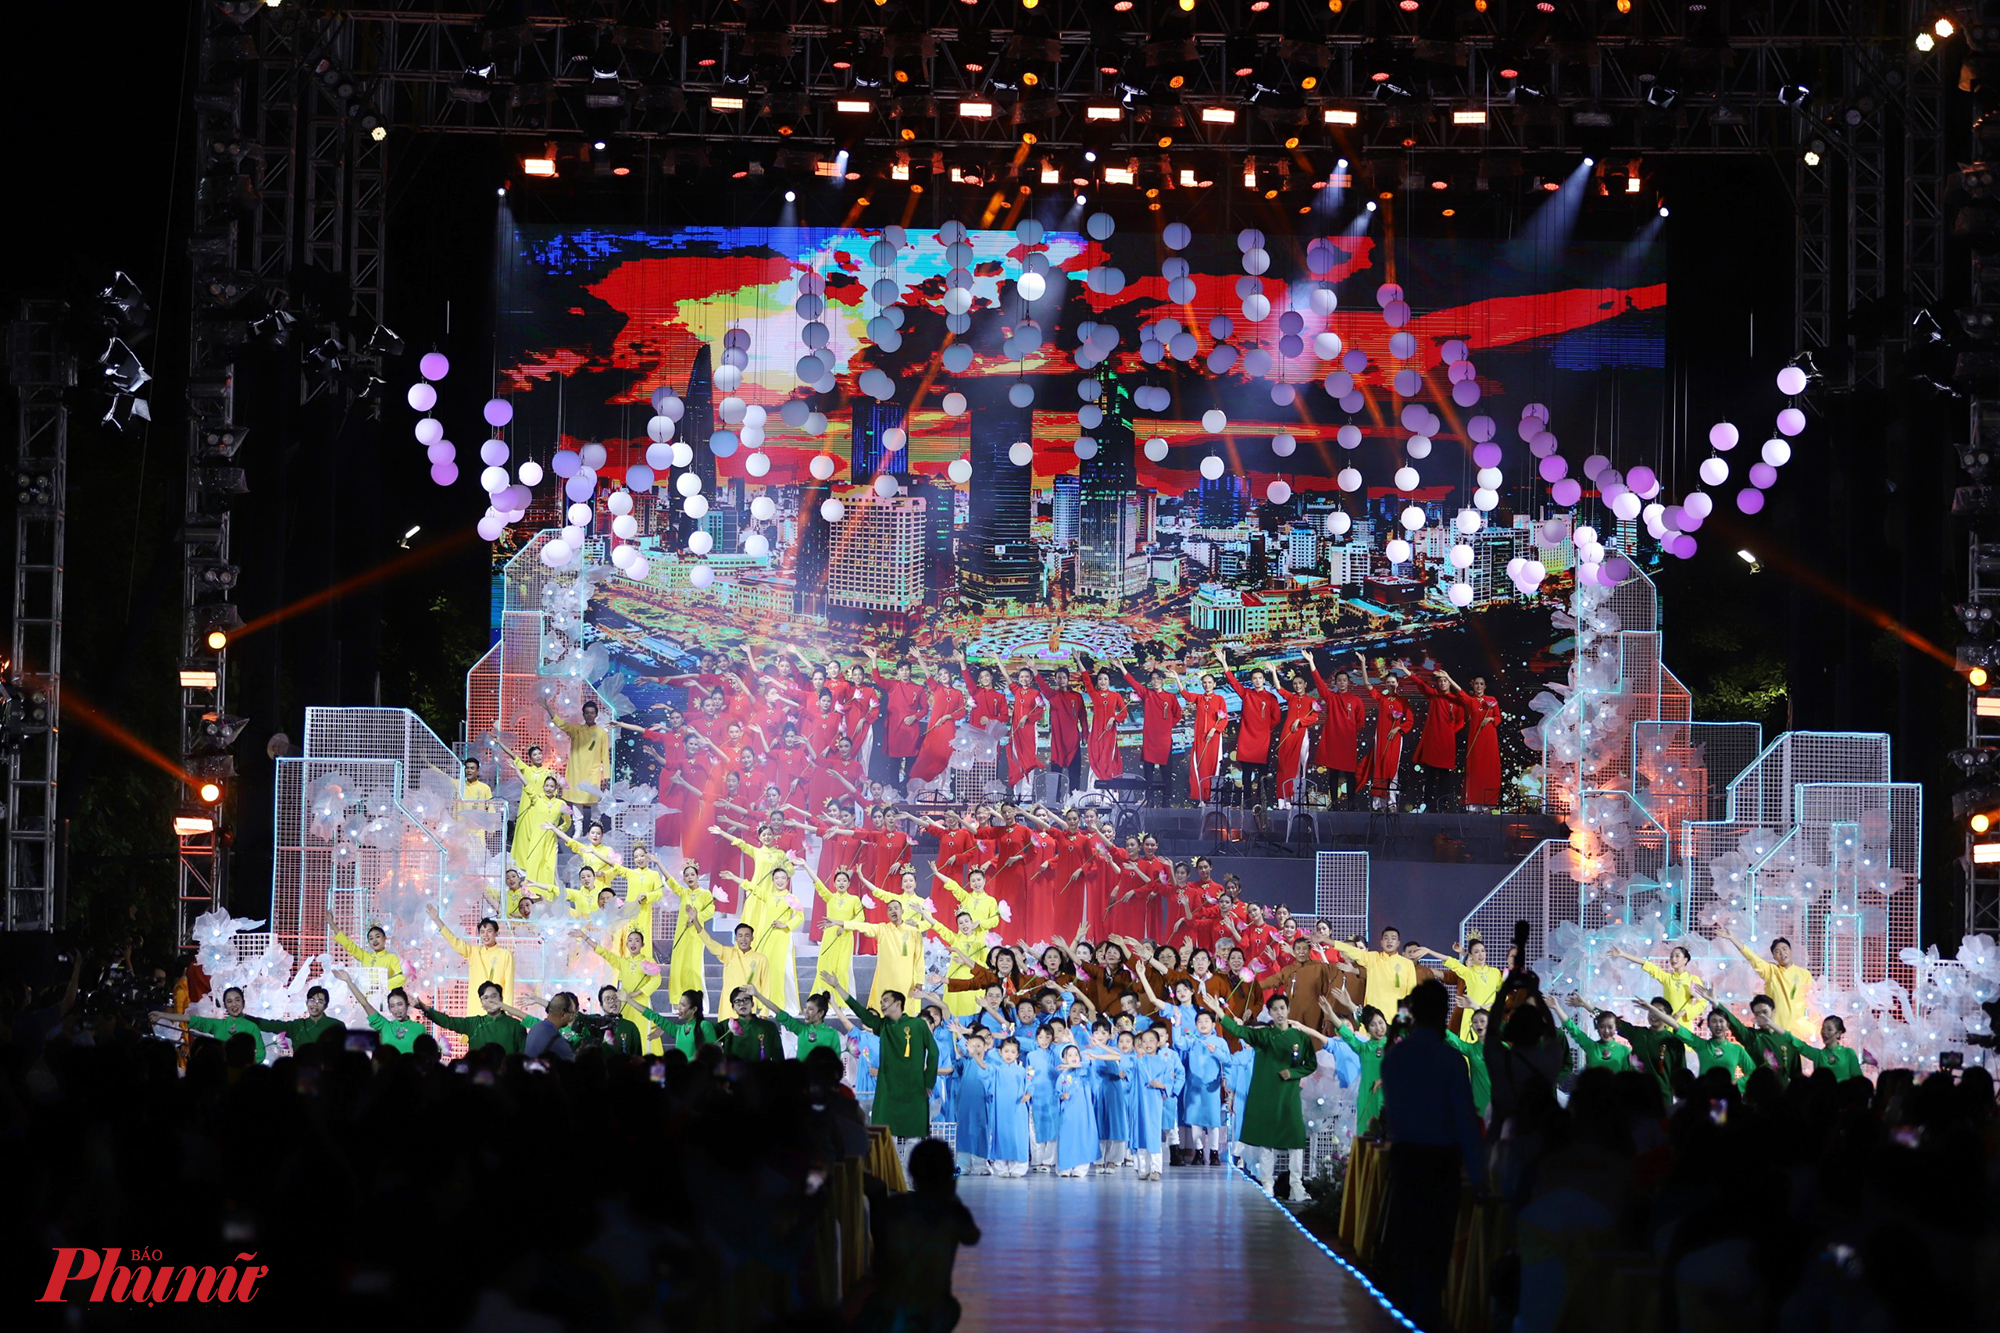 Sân khấu chính của lễ hội lấy ý tưởng từ quá trình chuyển đổi số của TPHCM. Mở màn là phần đồng diễn áo dài đầy màu sắc của nhiều đối tượng: thiếu nhi, cụ già, các người mẫu chuyên nghiệp.